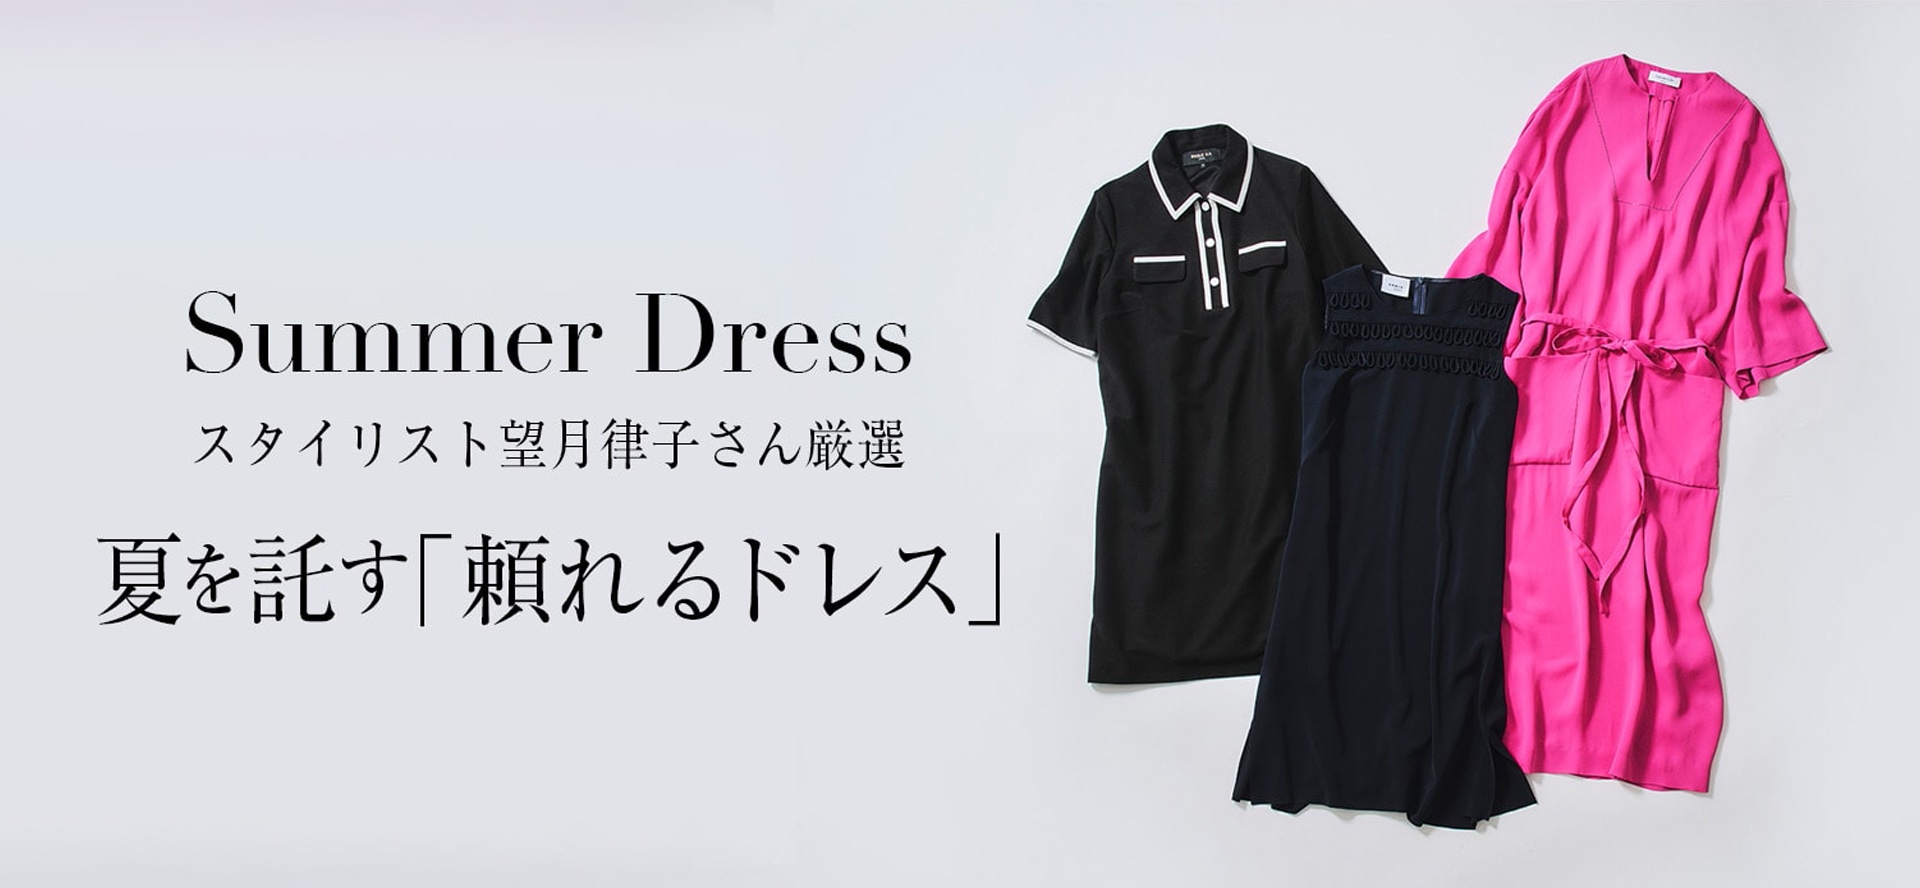 Summer Dress スタイリスト望月律子さん厳選 夏を託す「頼れるドレス」